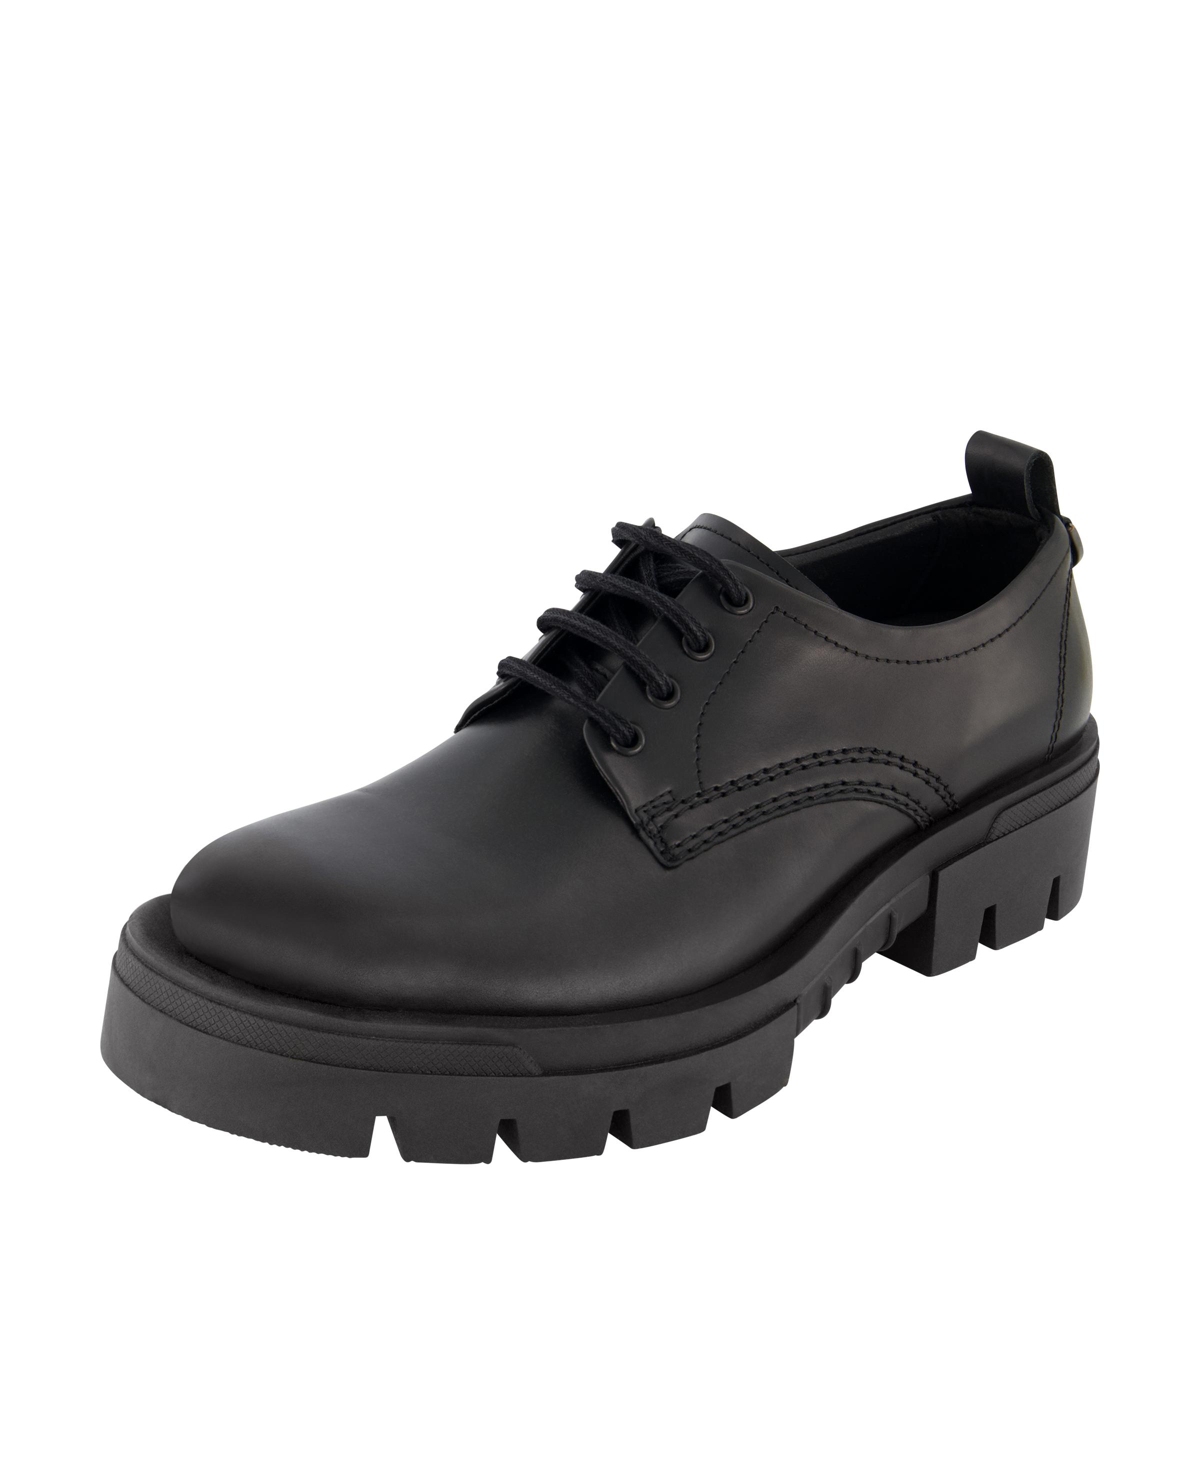 Men's White Label Leather Plain Toe Derby On Lug Sole Shoes - Black